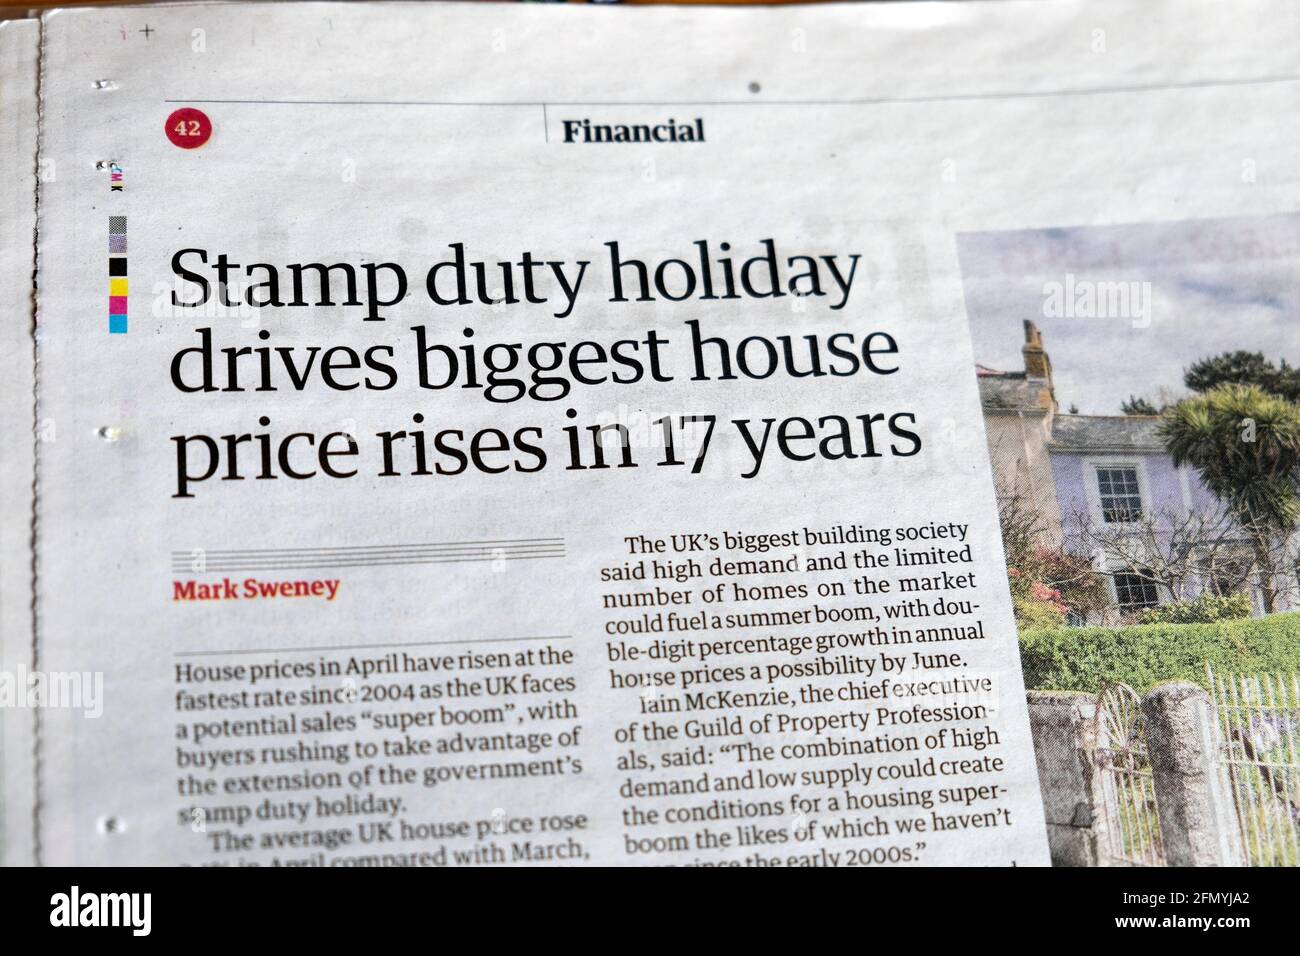 « les vacances en service intensif sont les plus grandes maisons en 17 ans » Titre du journal dans l'article de Guardian Financial du 30 avril 2021 Londres Angleterre Royaume-Uni Banque D'Images